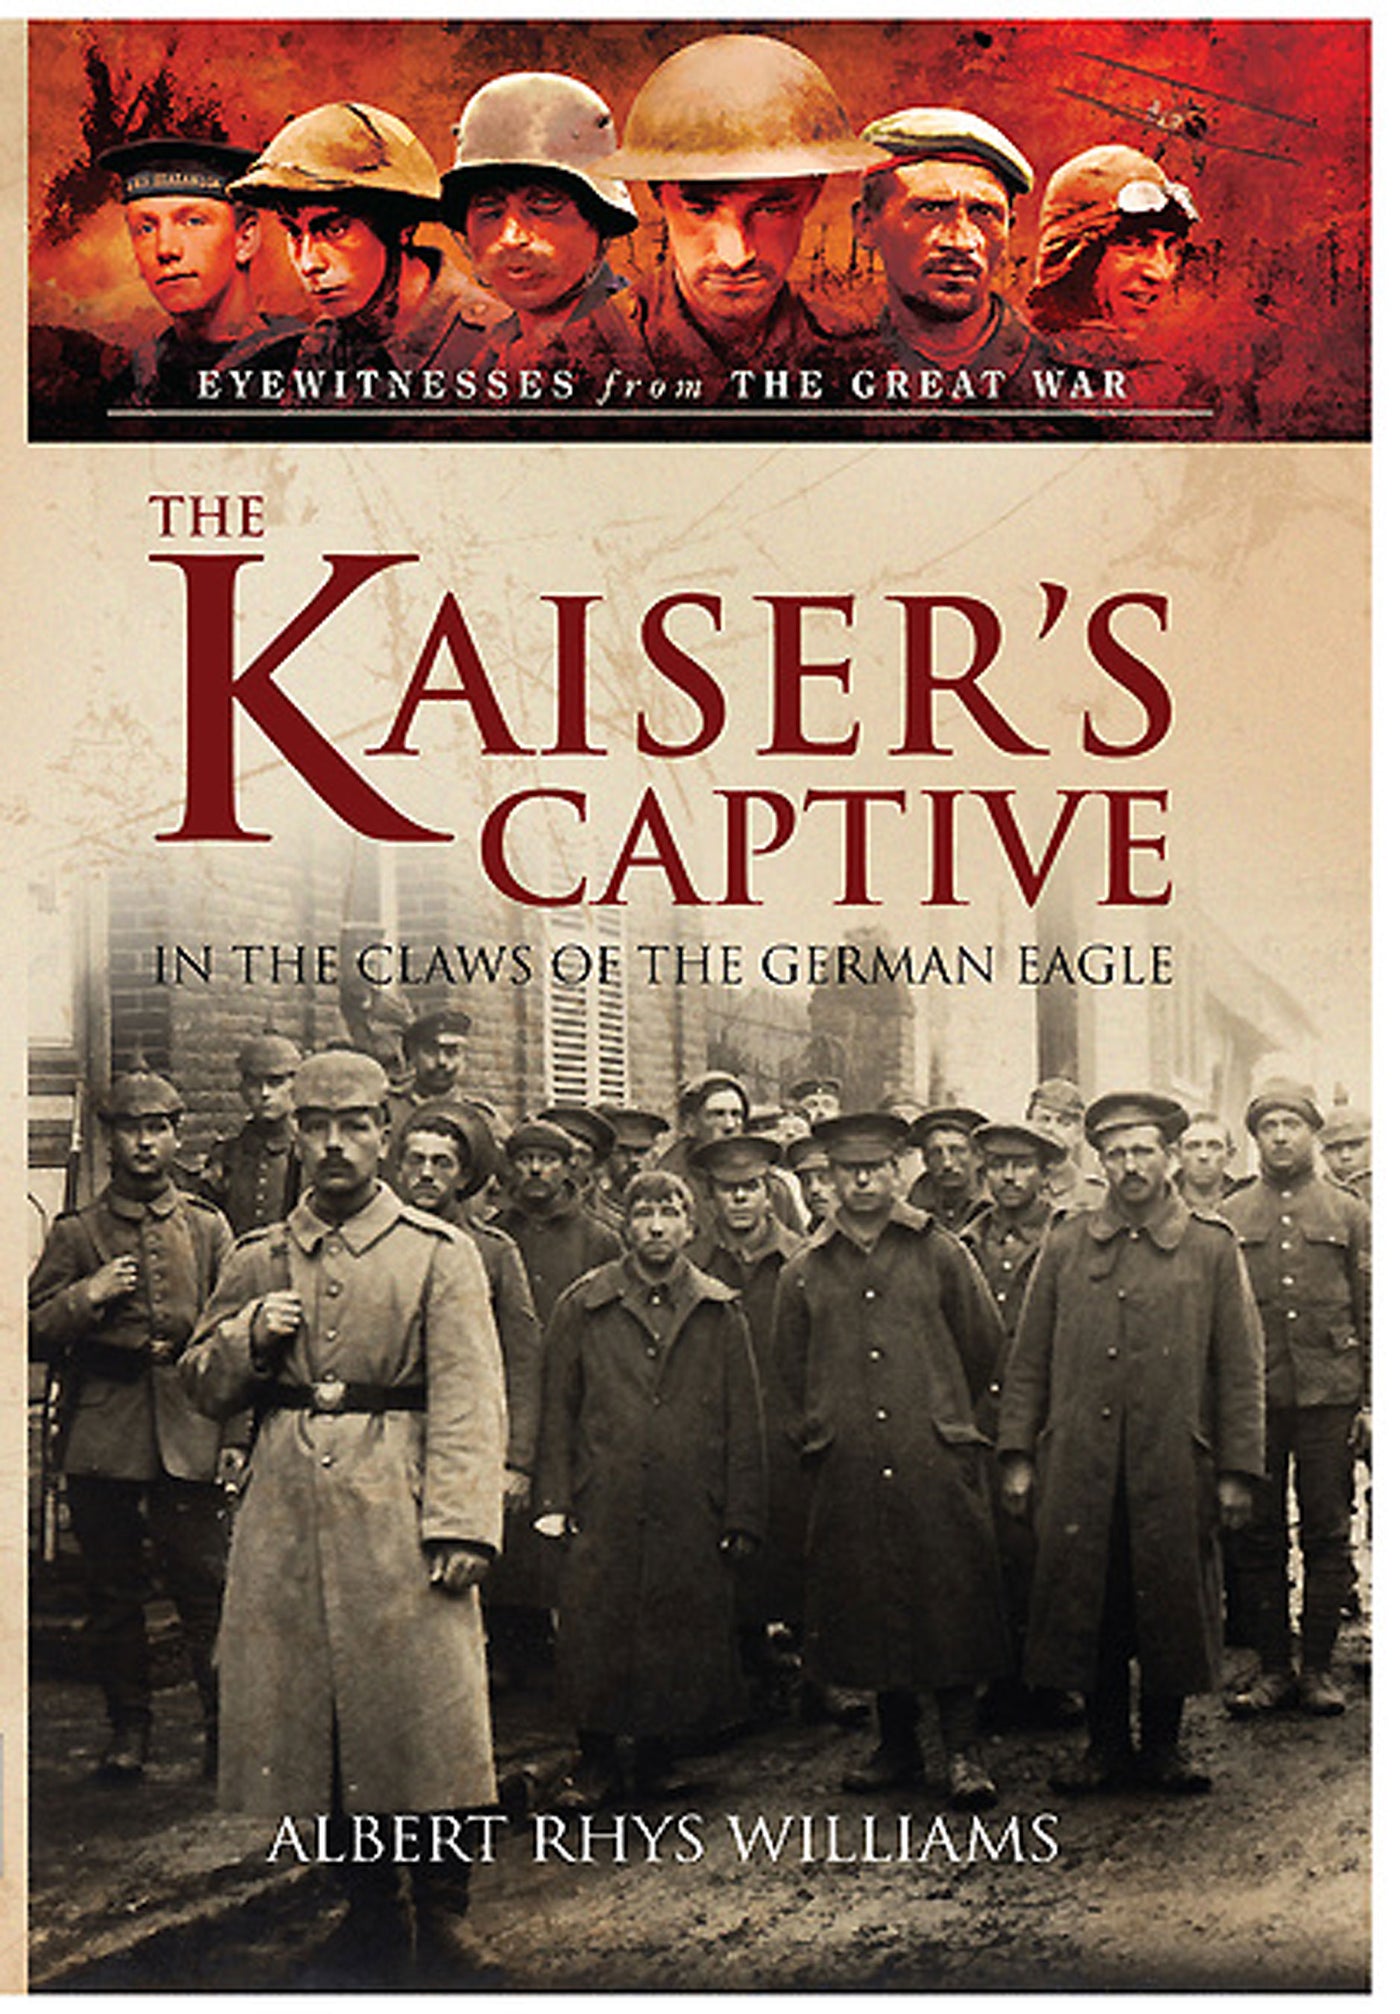 The Kaiser’s Captive